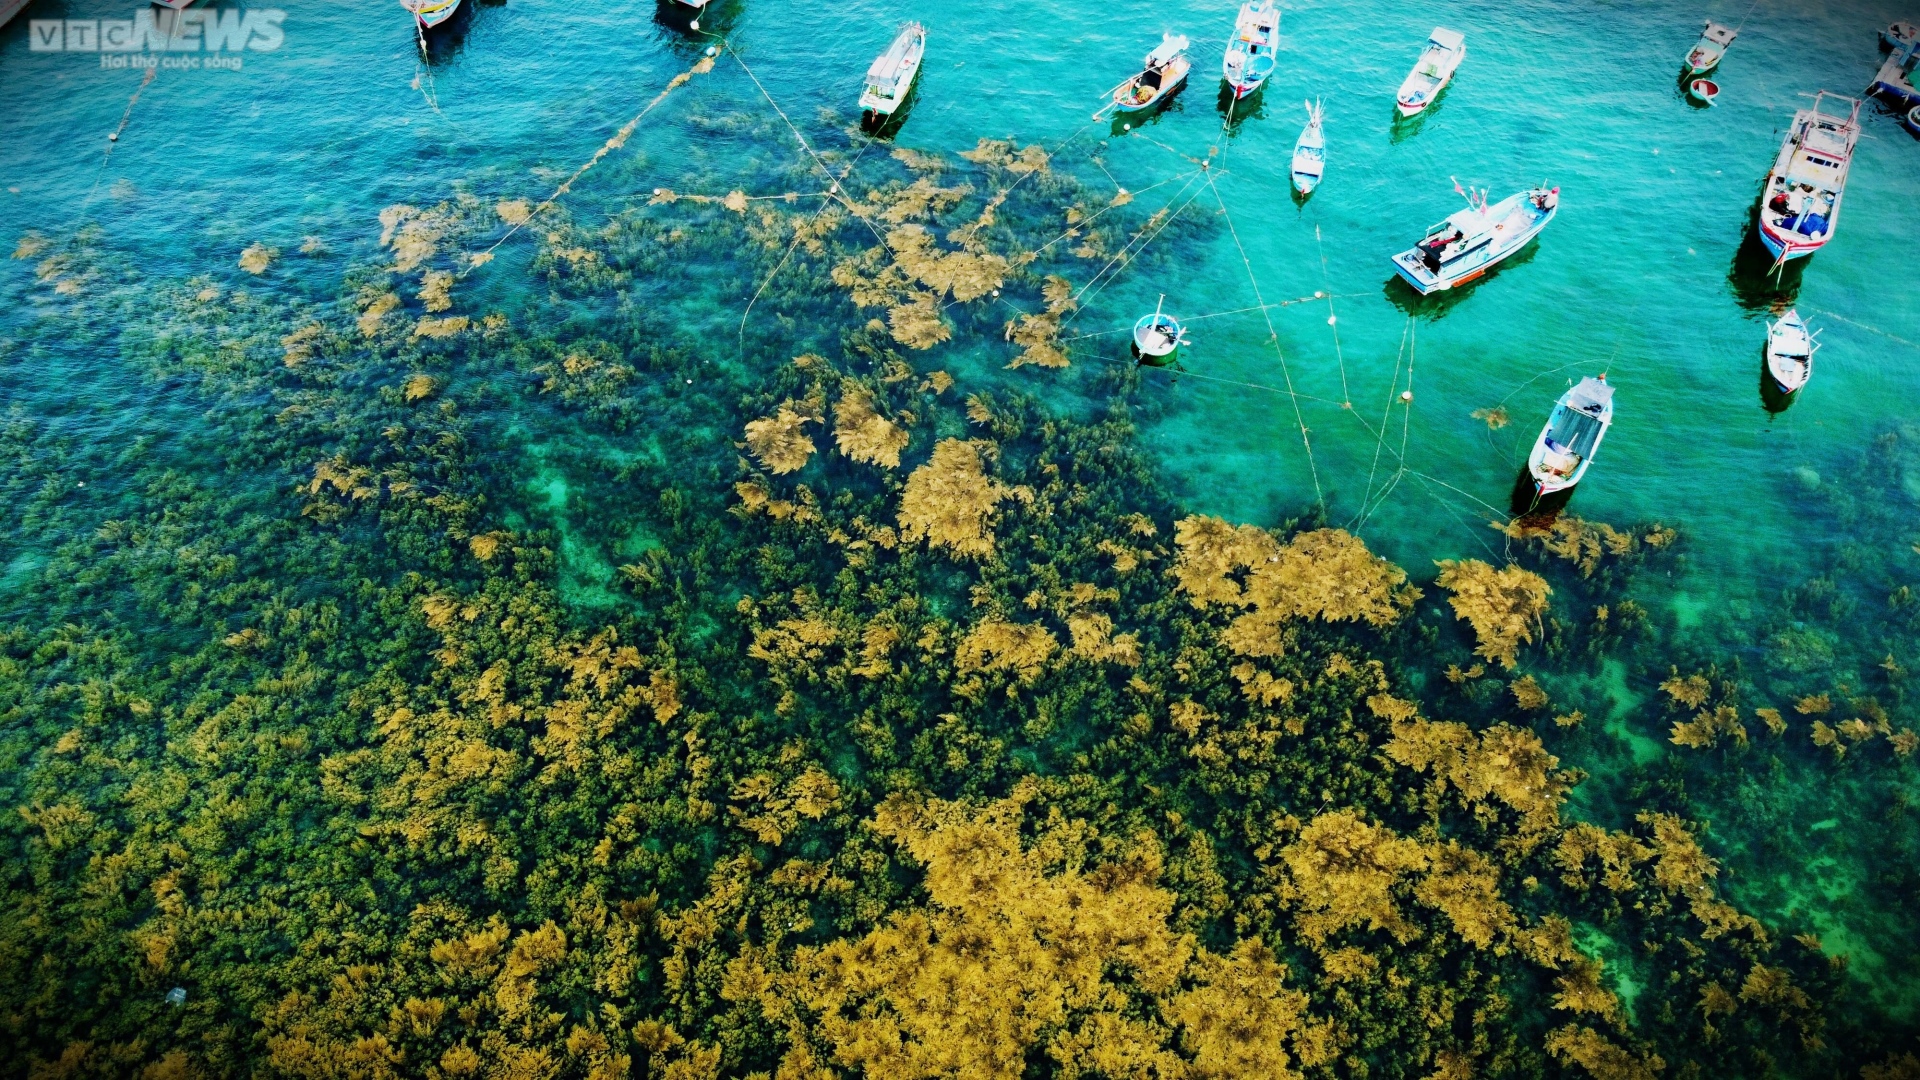 Ngất ngây 'cánh đồng vàng' dưới biển xanh trong ở đảo Hòn Khô, Bình Định - 2